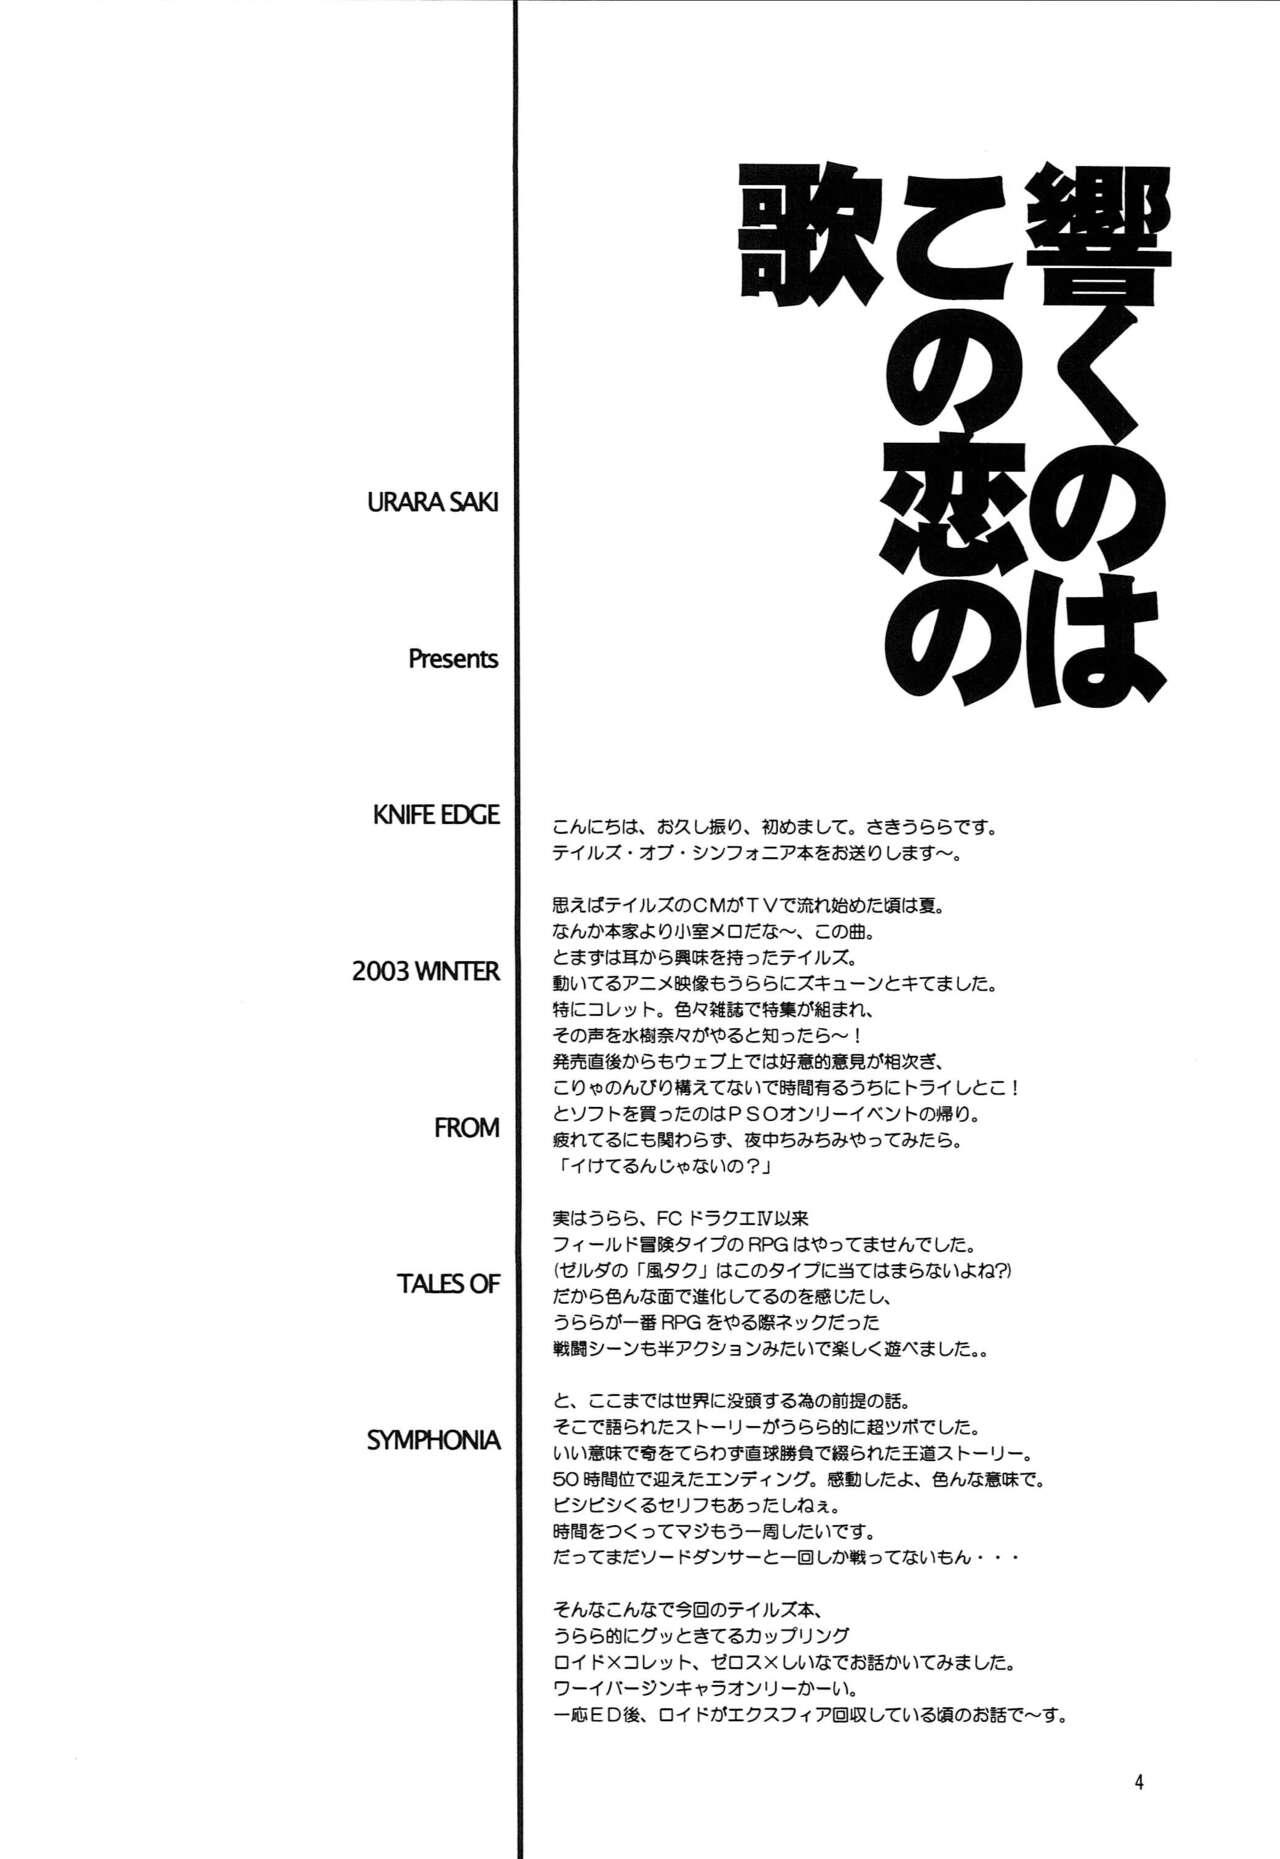 Stud Hibiku no wa, Kono Koi no Uta - Tales of symphonia Femdom Clips - Page 3